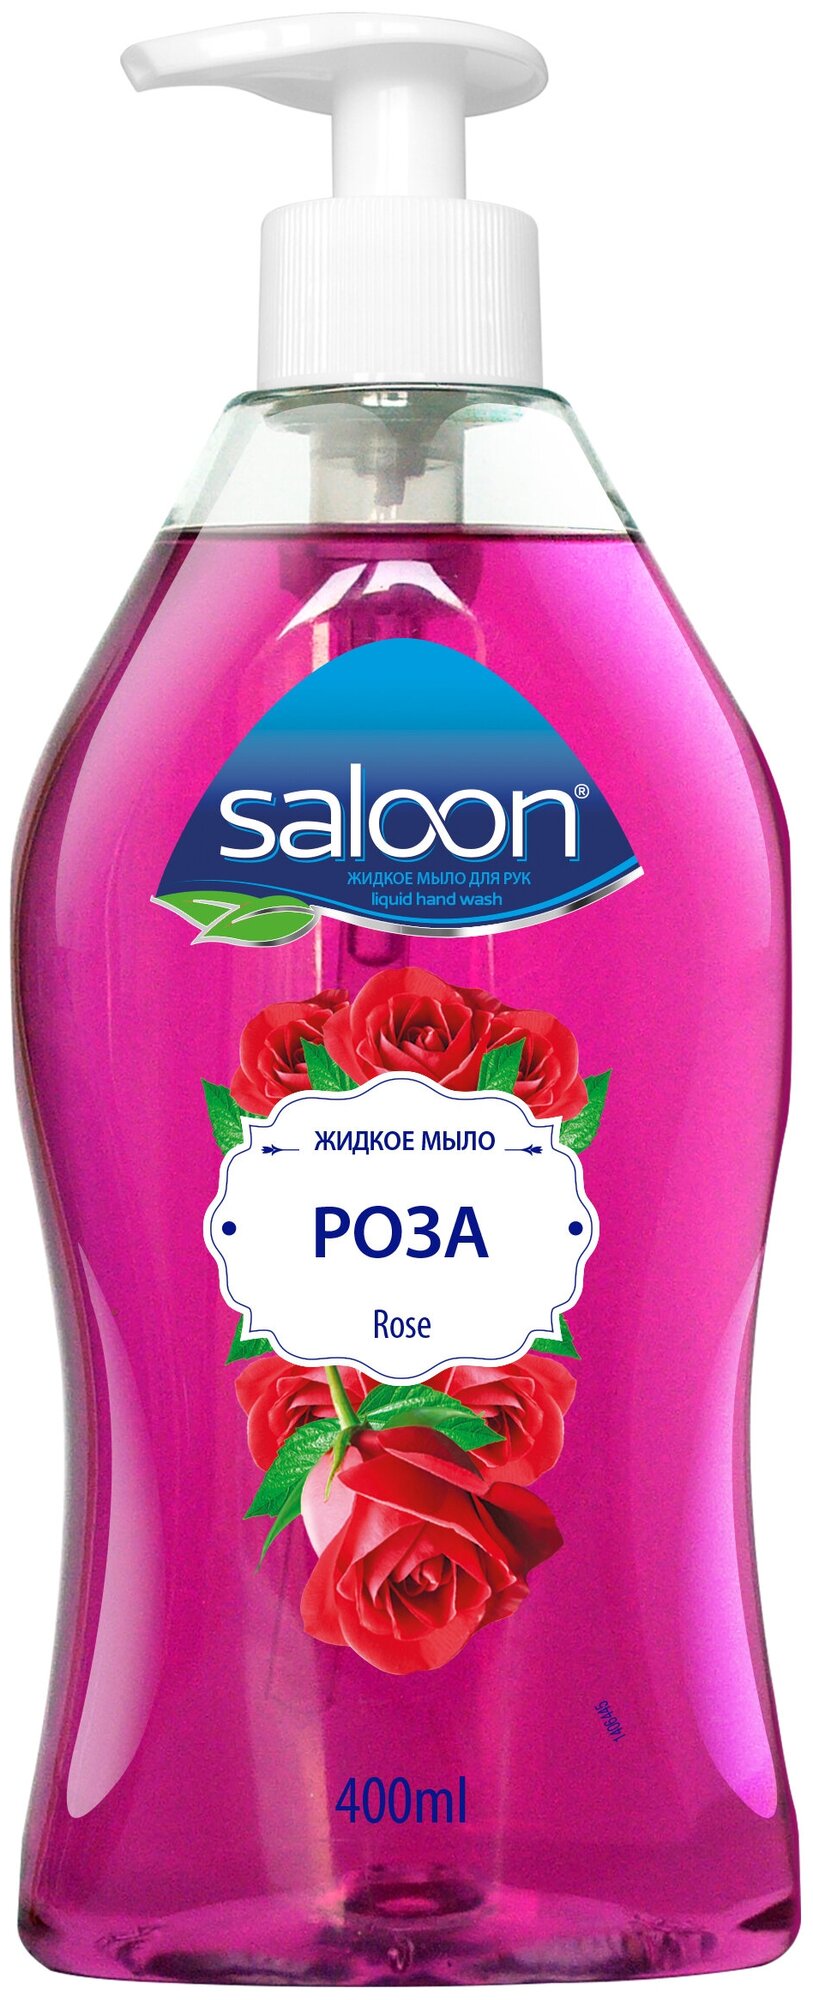 Жидкое мыло Saloon "Роза" 400мл Saloon Sıvı Sabun Gül 400 ml